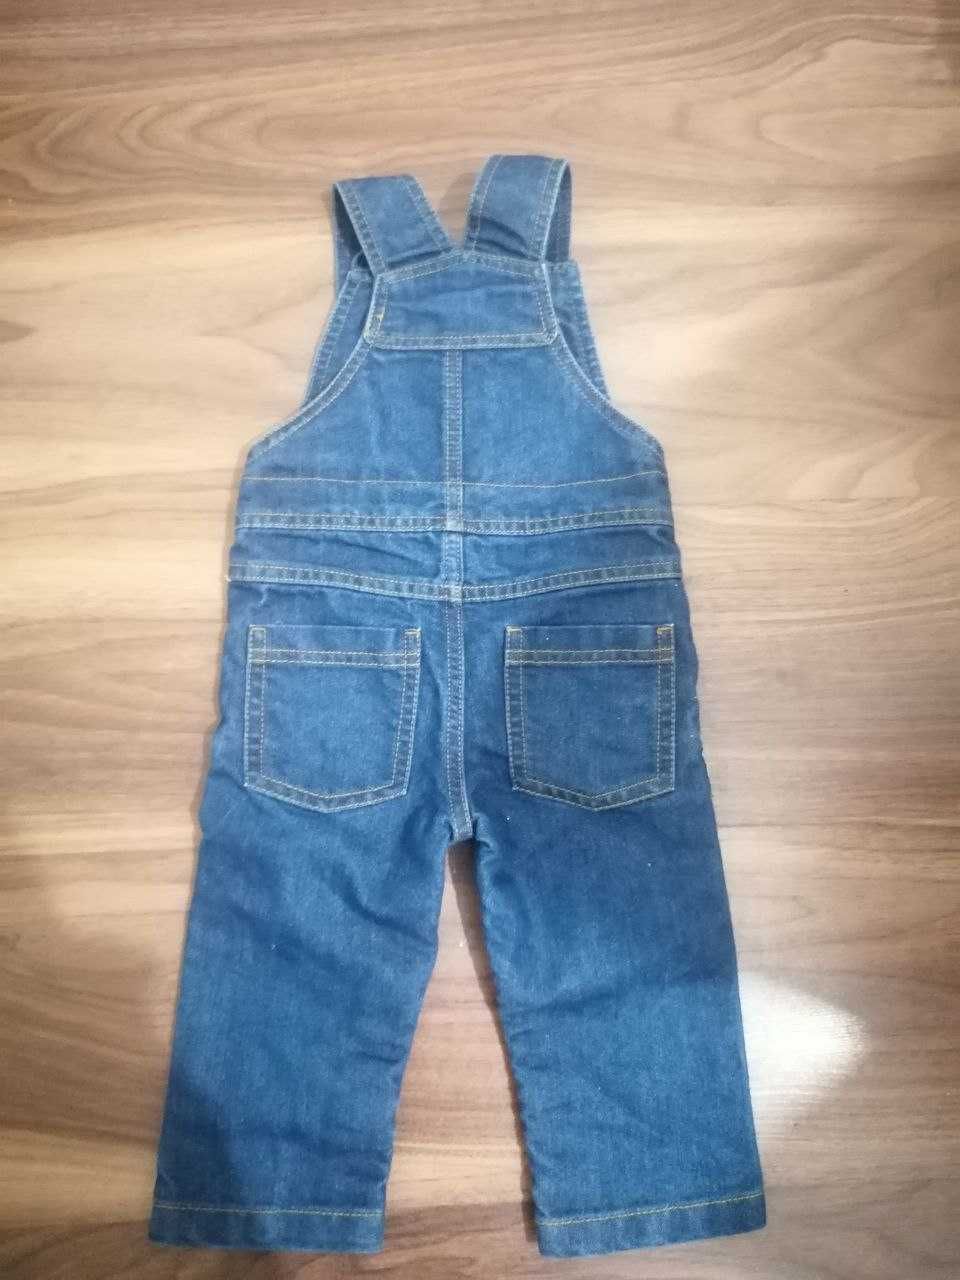 Дитячий джинсовий комбінезон від бренду Baby Club C&A у розмірі 86.